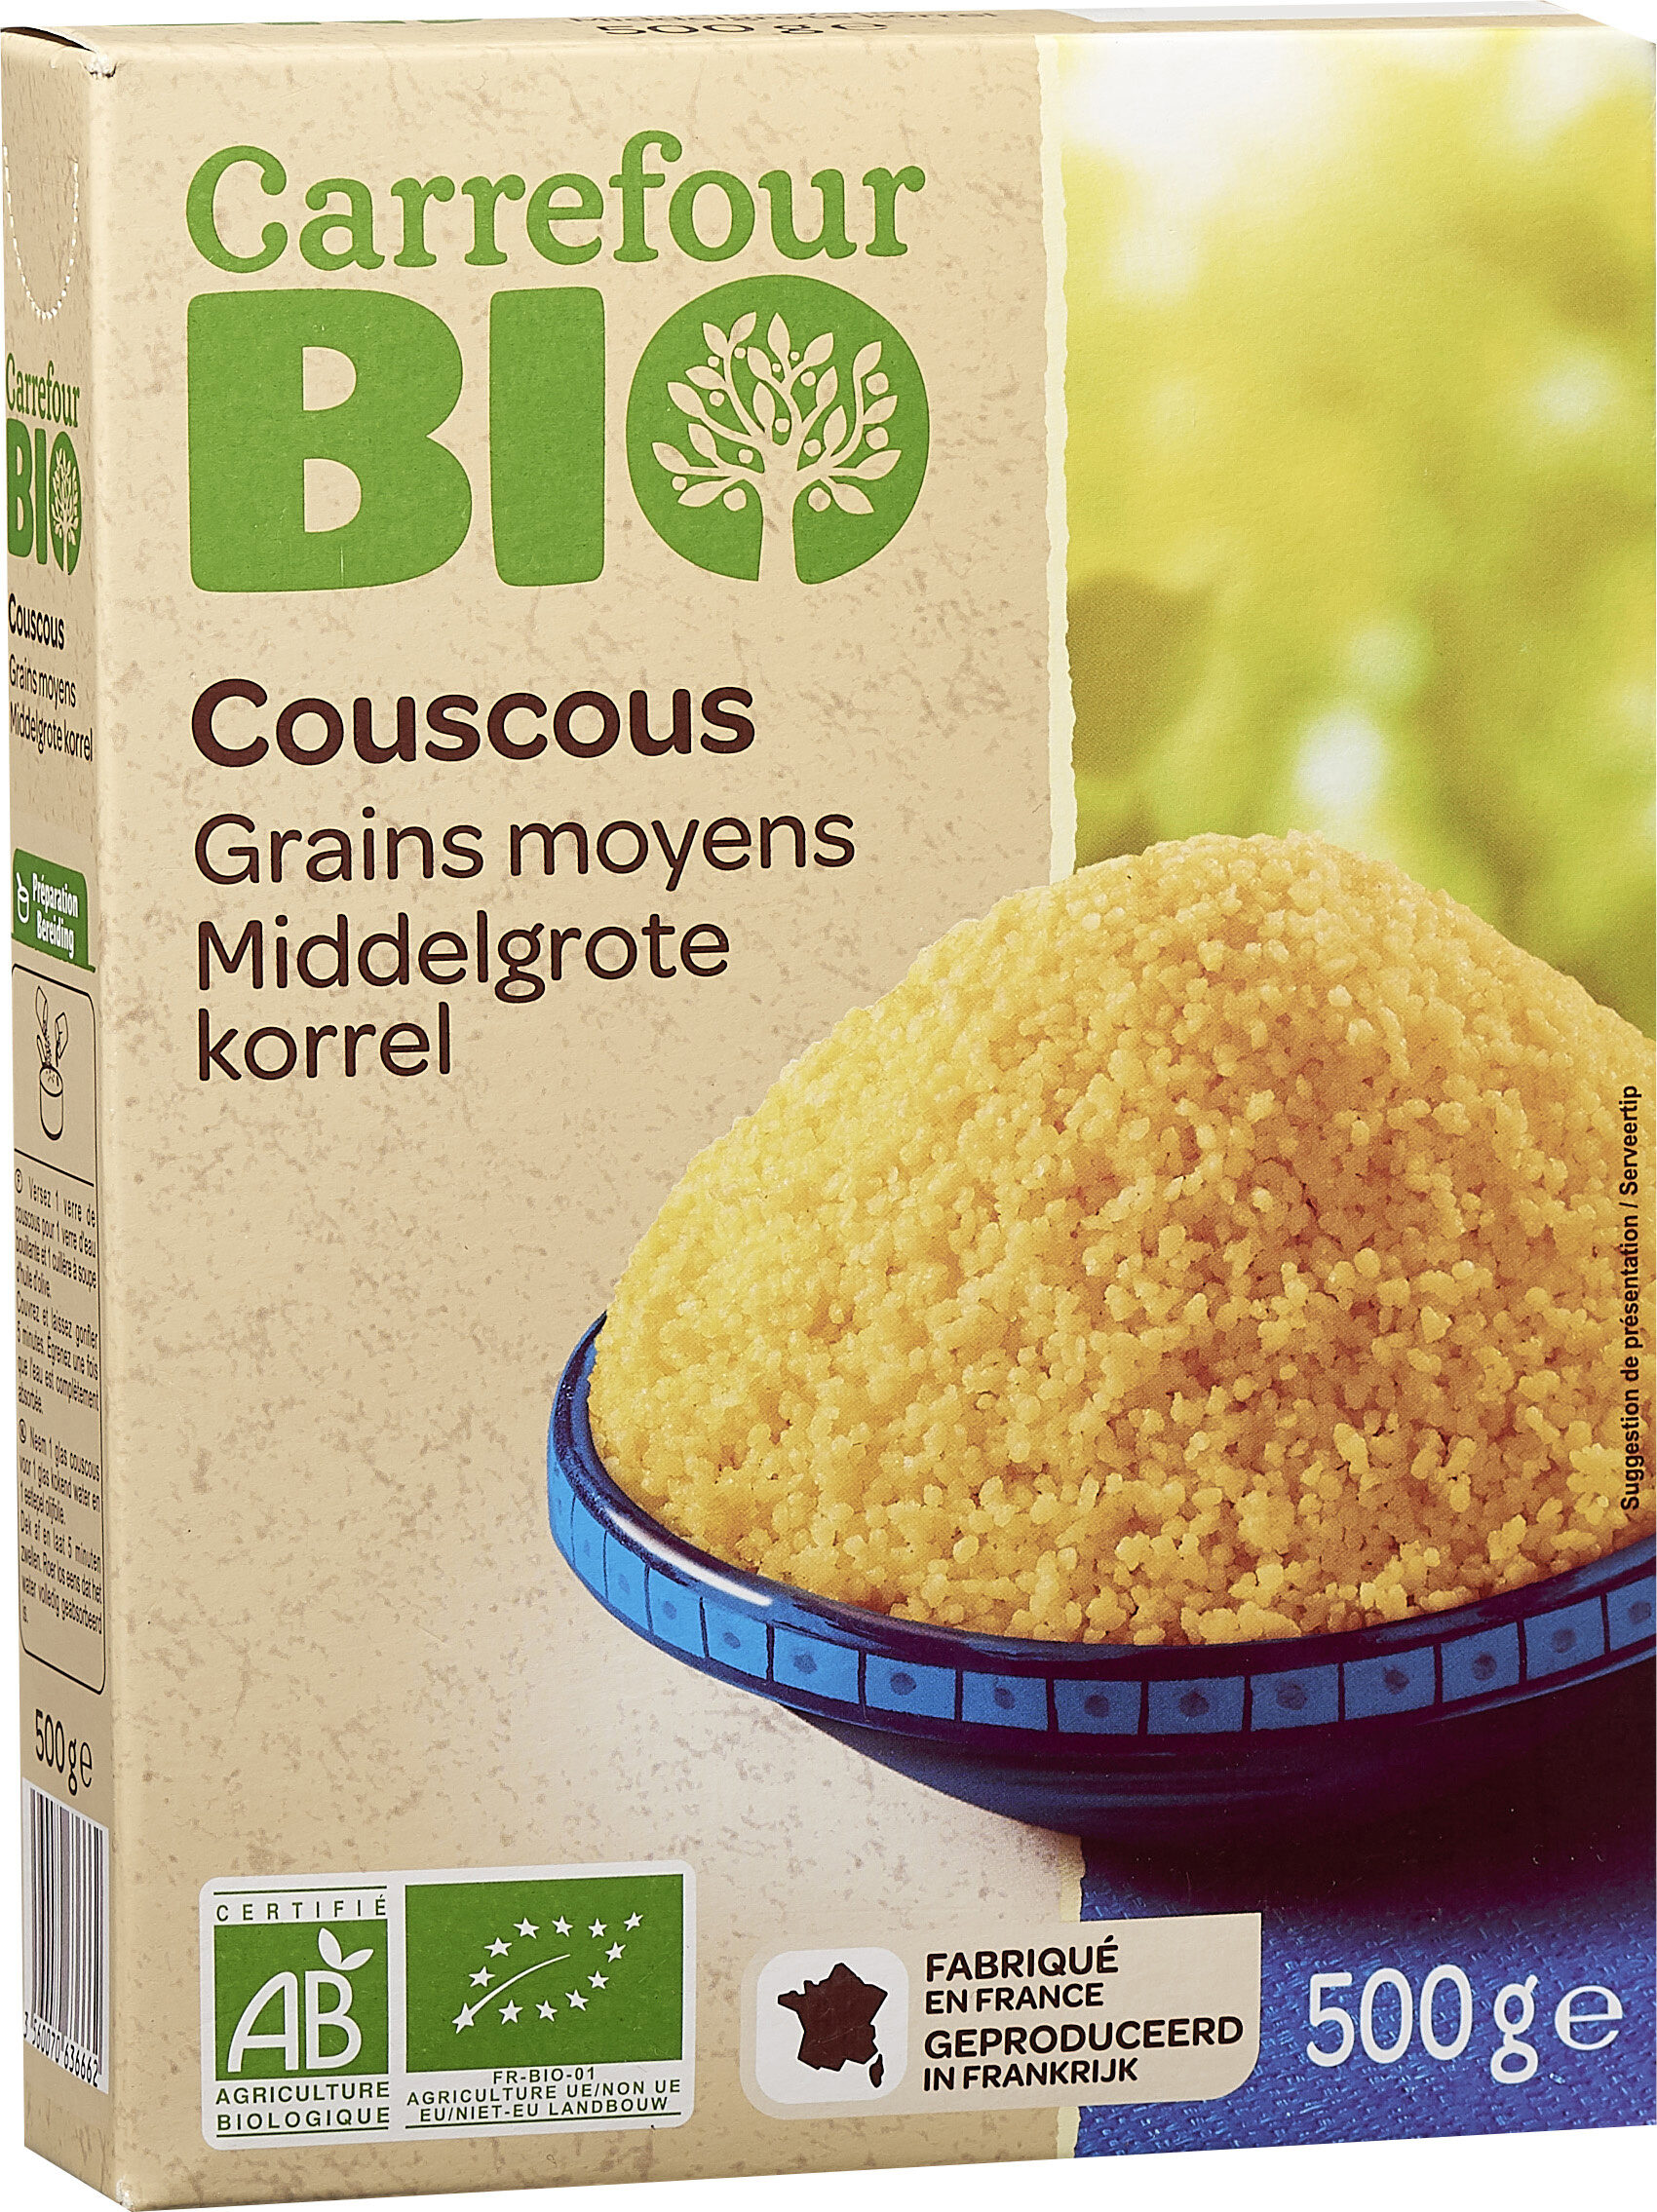 Couscous Grains moyens - Product - fr